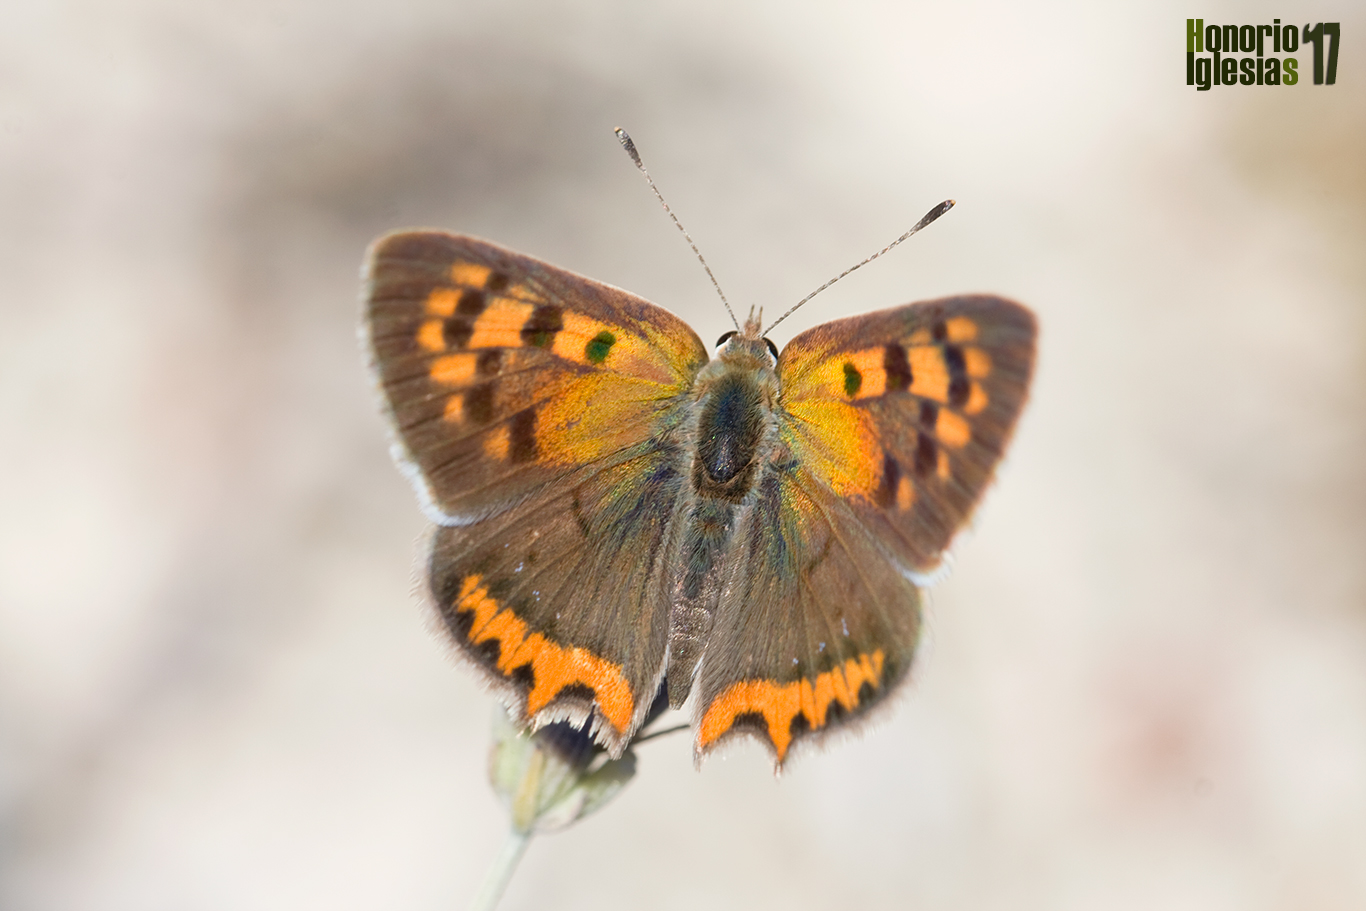 Ejemplar de mariposa manto común o bicolor  (Lycaena phlaeas) , una de las mariposas más comunes de la Sierra de Guadarrama, con varias generaciones que aguantan desde primeros de Abril hasta finales de Octubre.